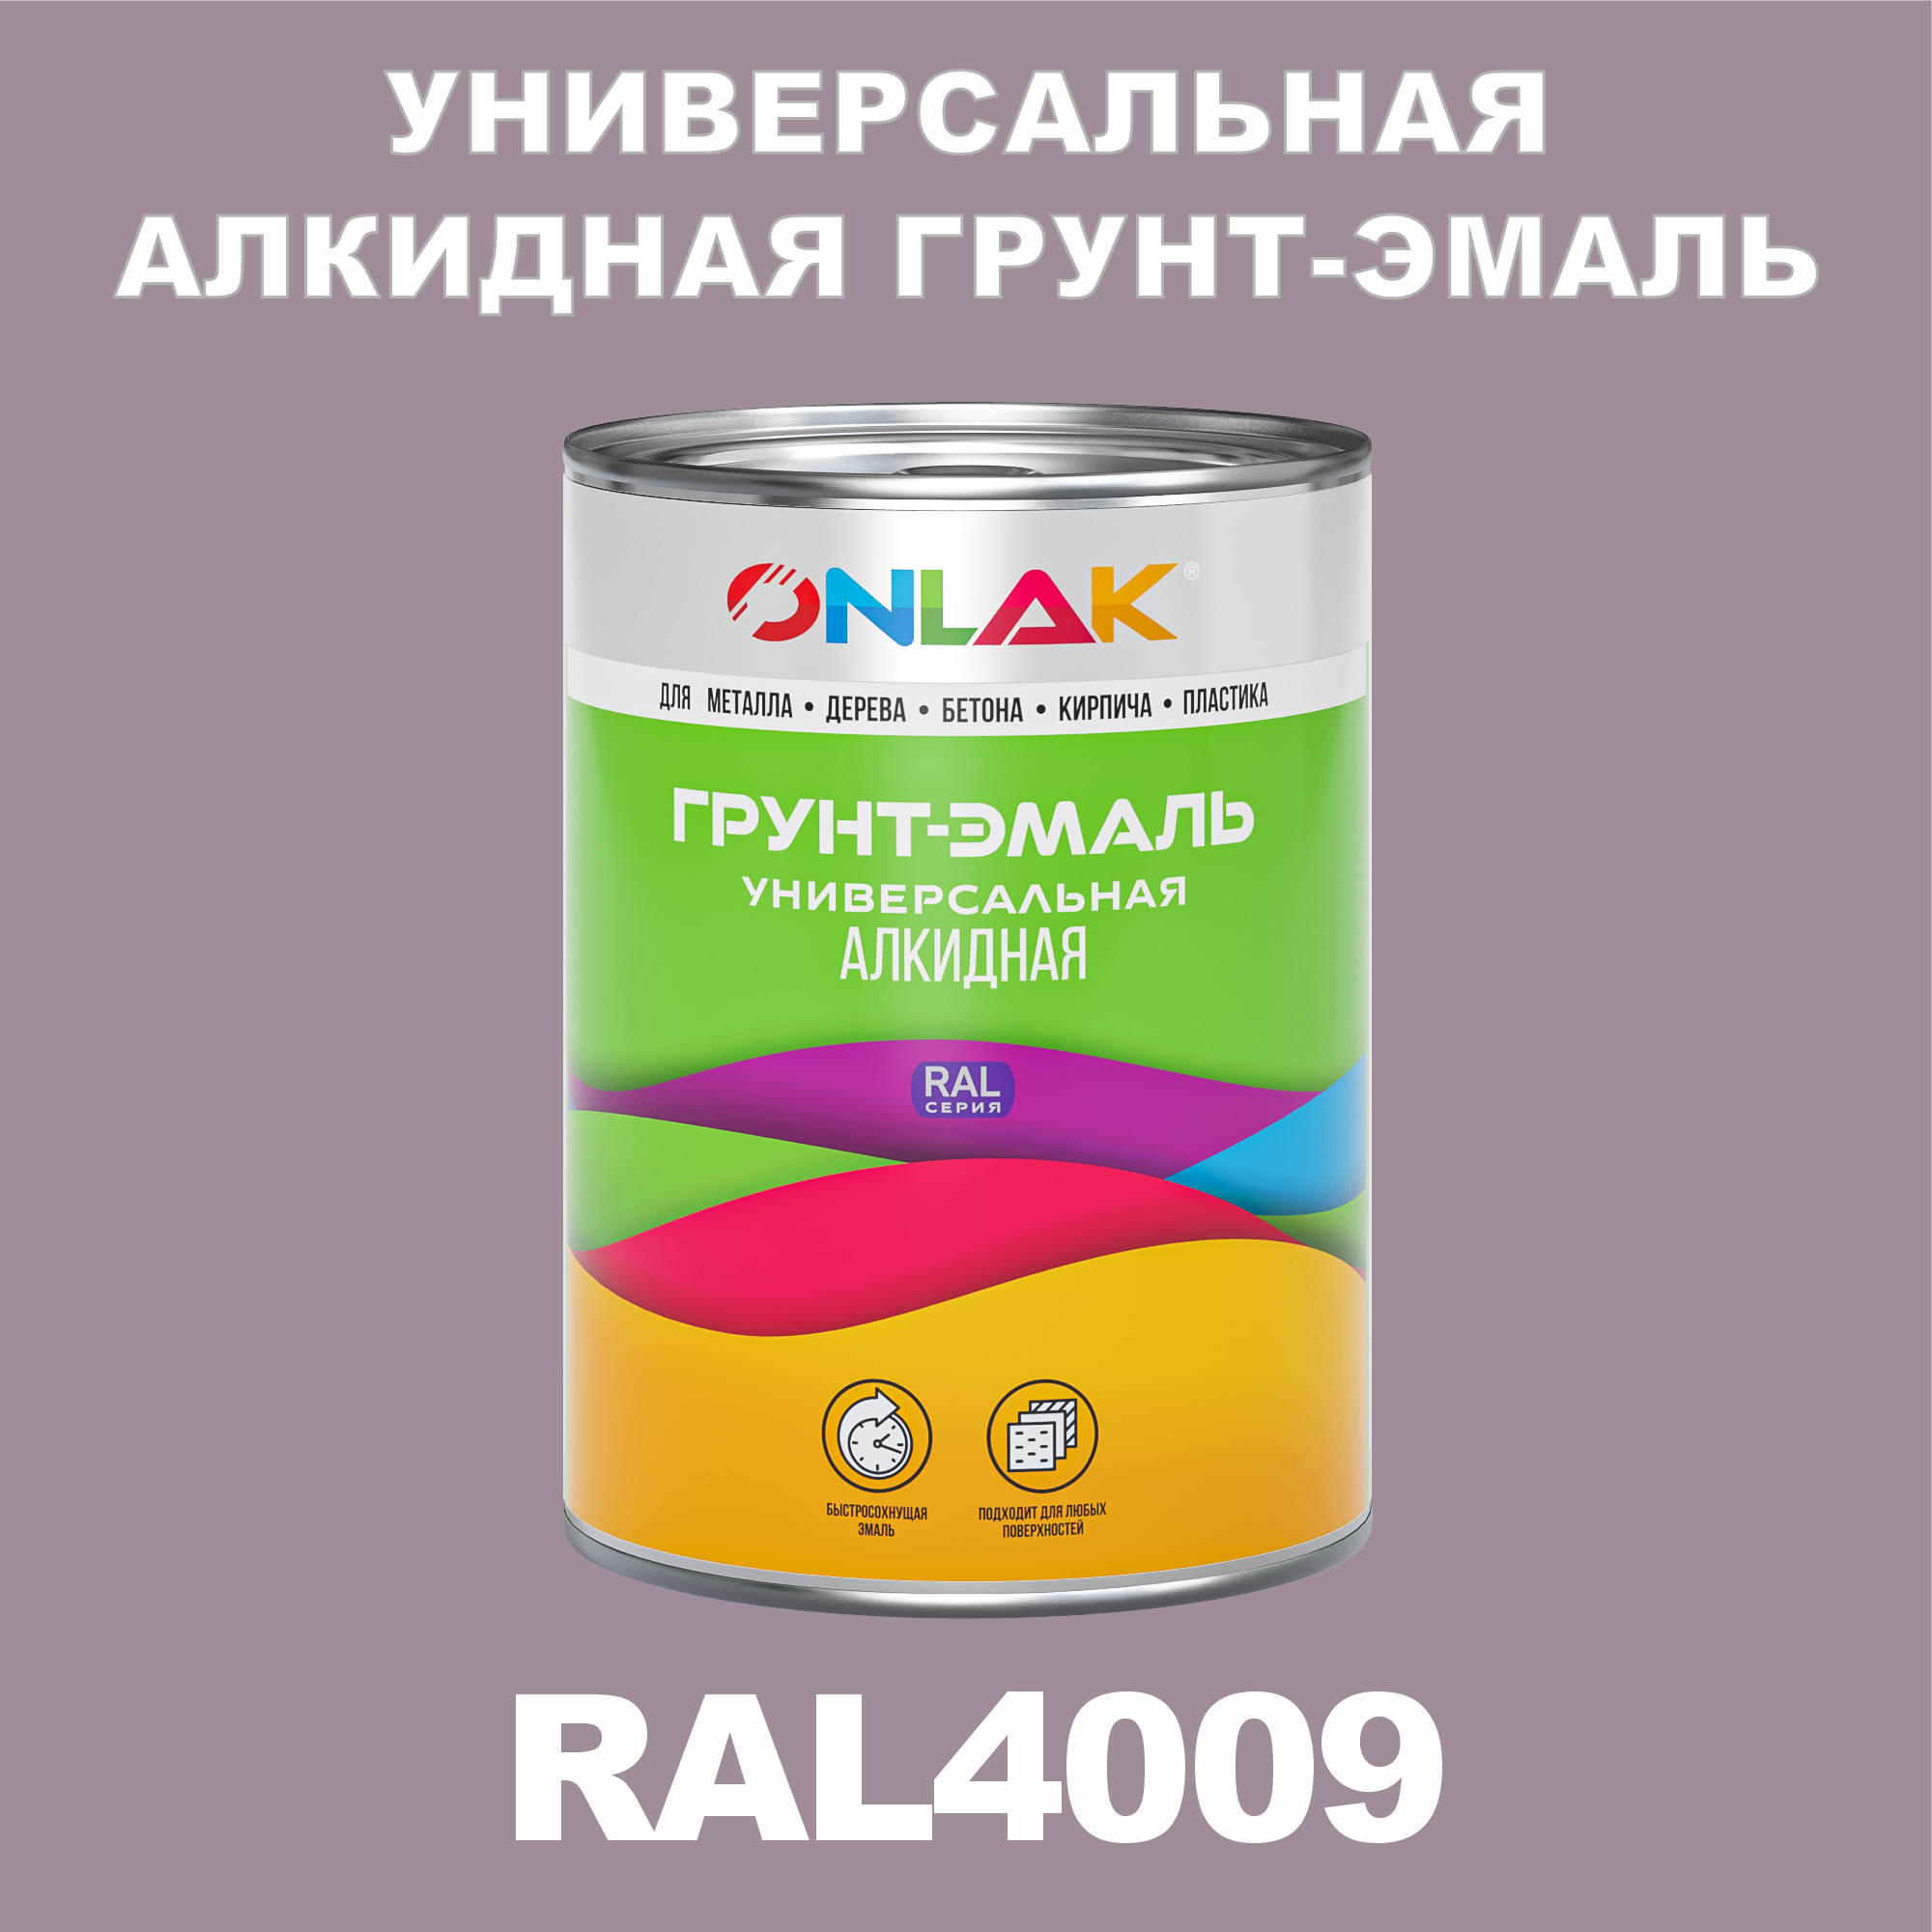 Грунт-эмаль ONLAK 1К RAL4009 антикоррозионная алкидная по металлу по ржавчине 1 кг антикоррозионная грунт эмаль onlak ral 4008 фиолетовый 610 мл